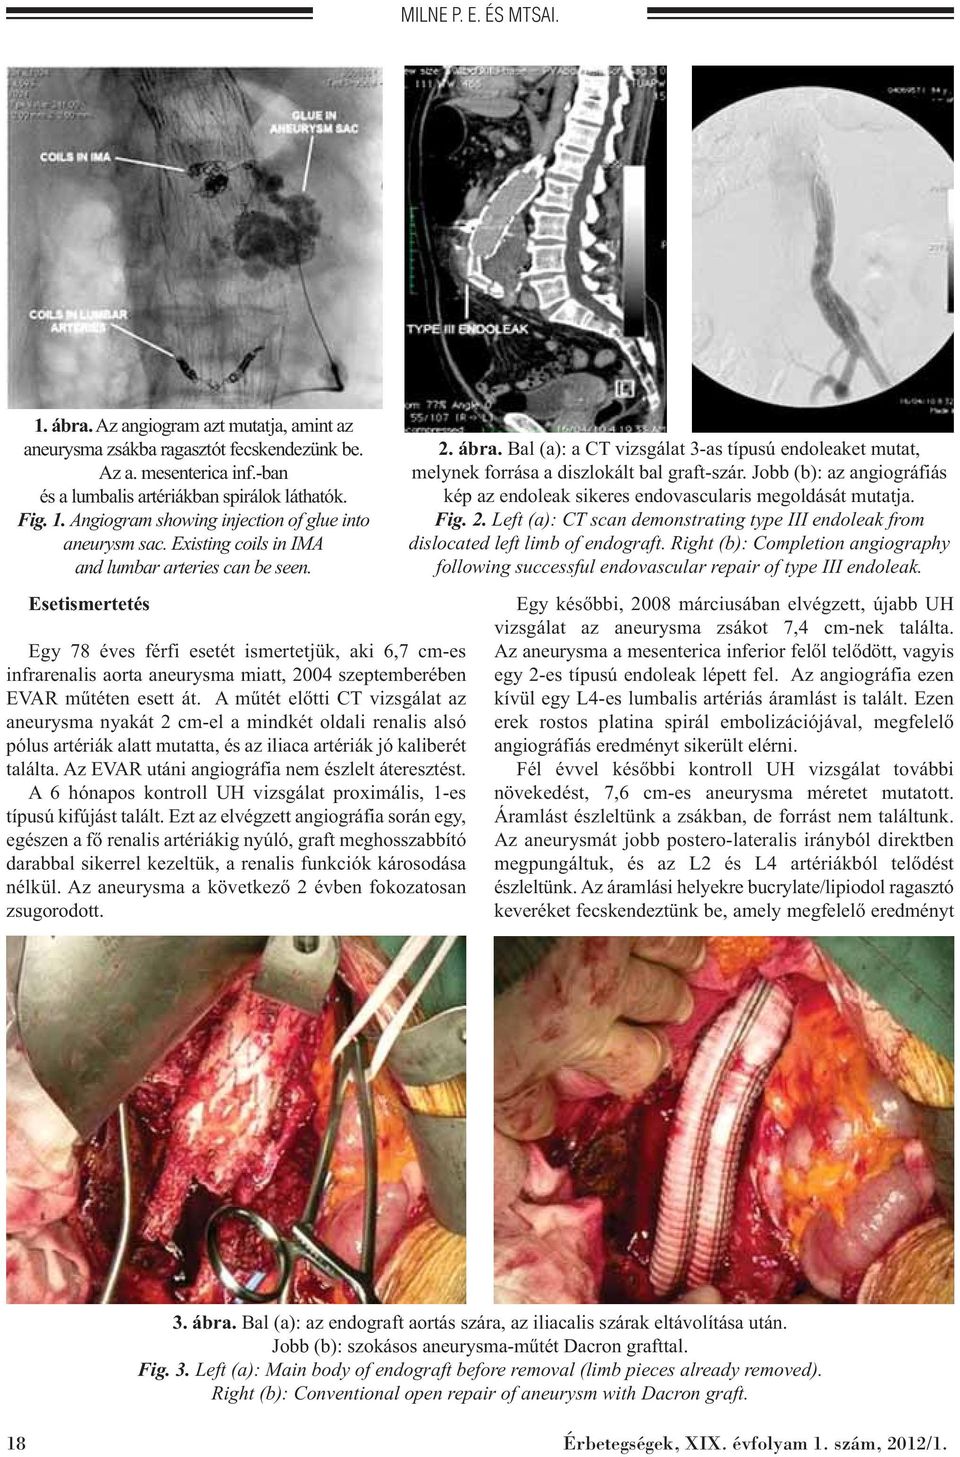 A műtét előtti CT vizsgálat az aneurysma nyakát 2 cm-el a mindkét oldali renalis alsó pólus artériák alatt mutatta, és az iliaca artériák jó kaliberét találta.